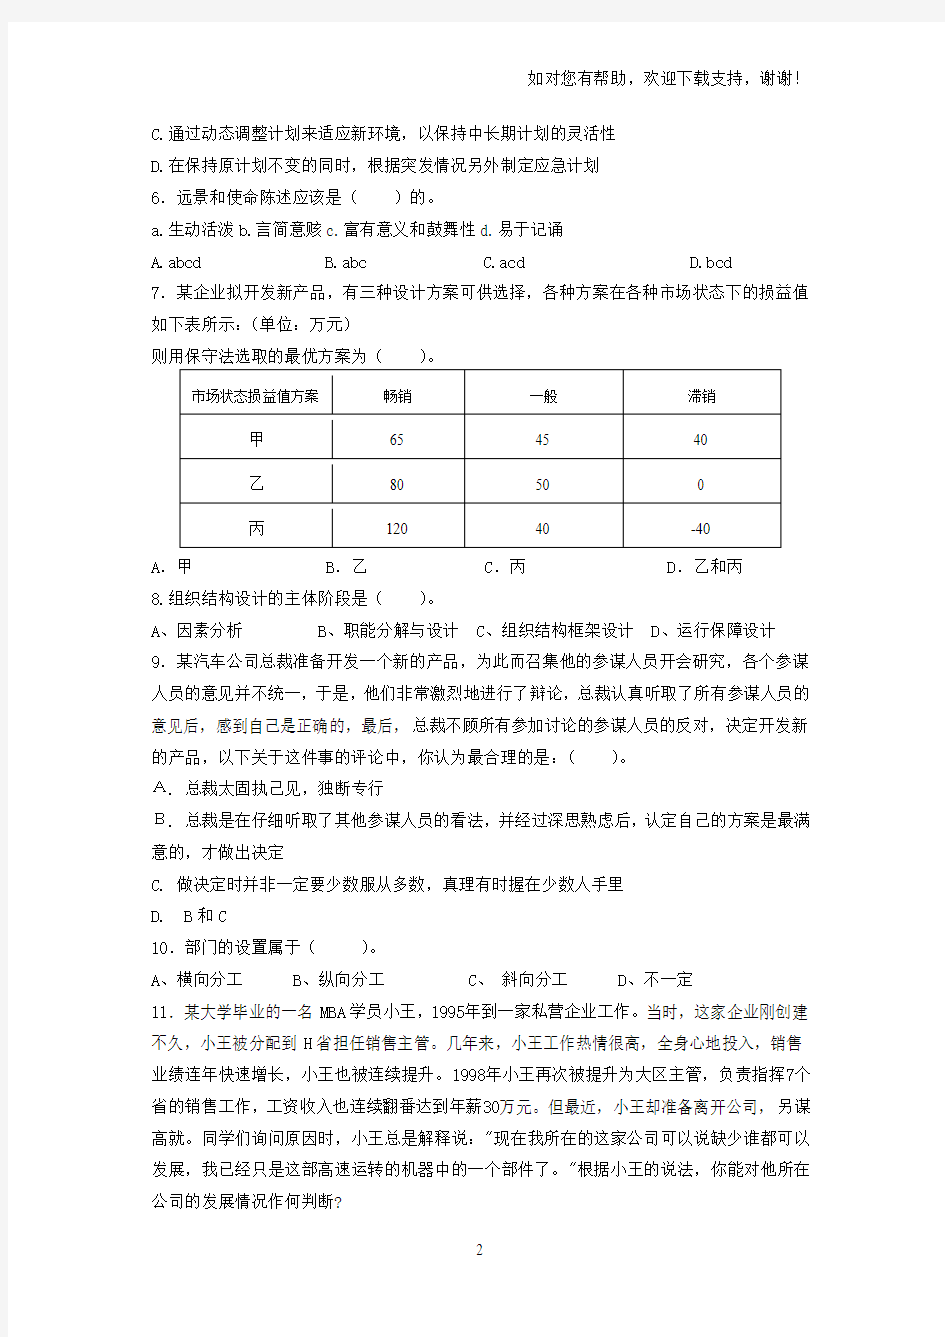 桂林电子科技大学信息科技学院试卷